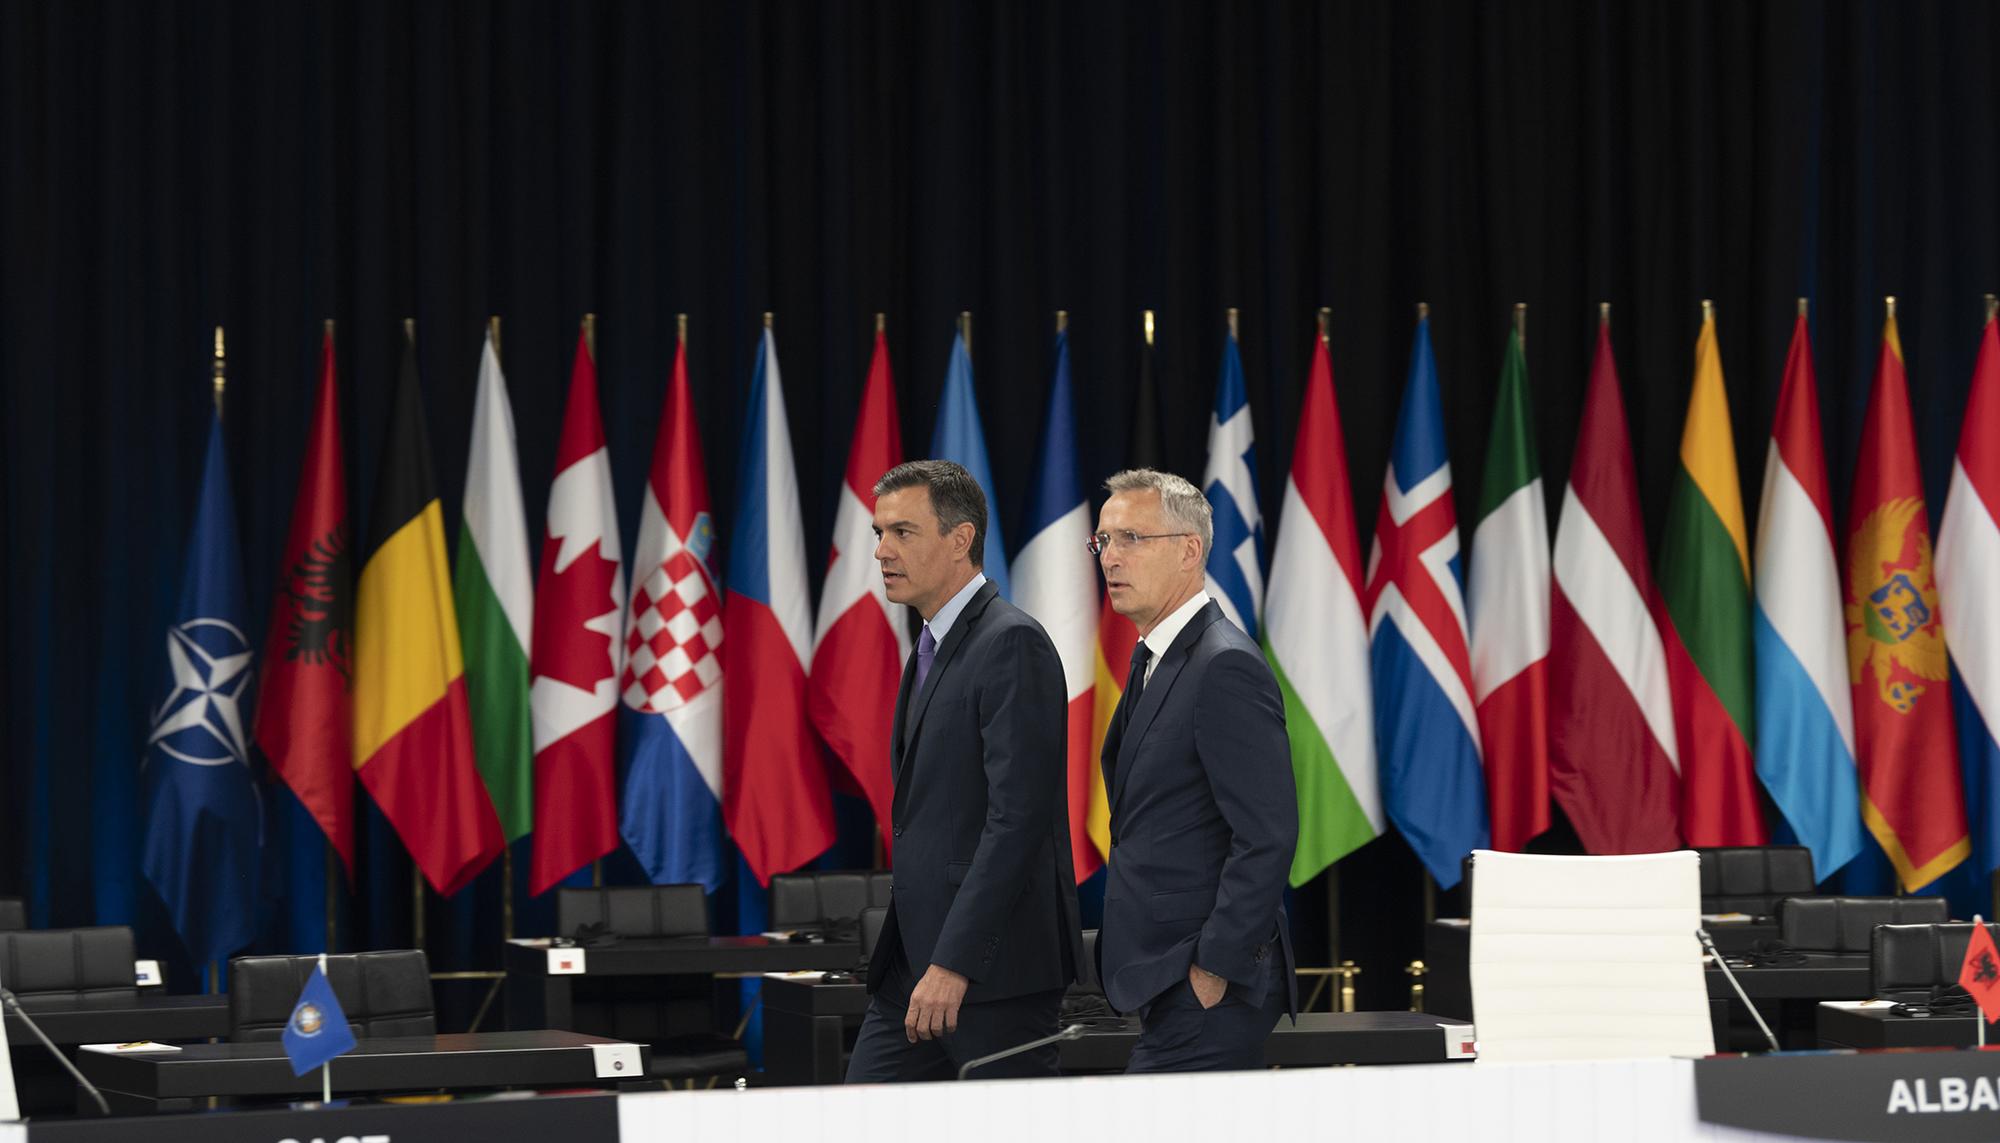 Pedro Sánchez Cumbre de la OTAN Jens Stoltenberg - 2